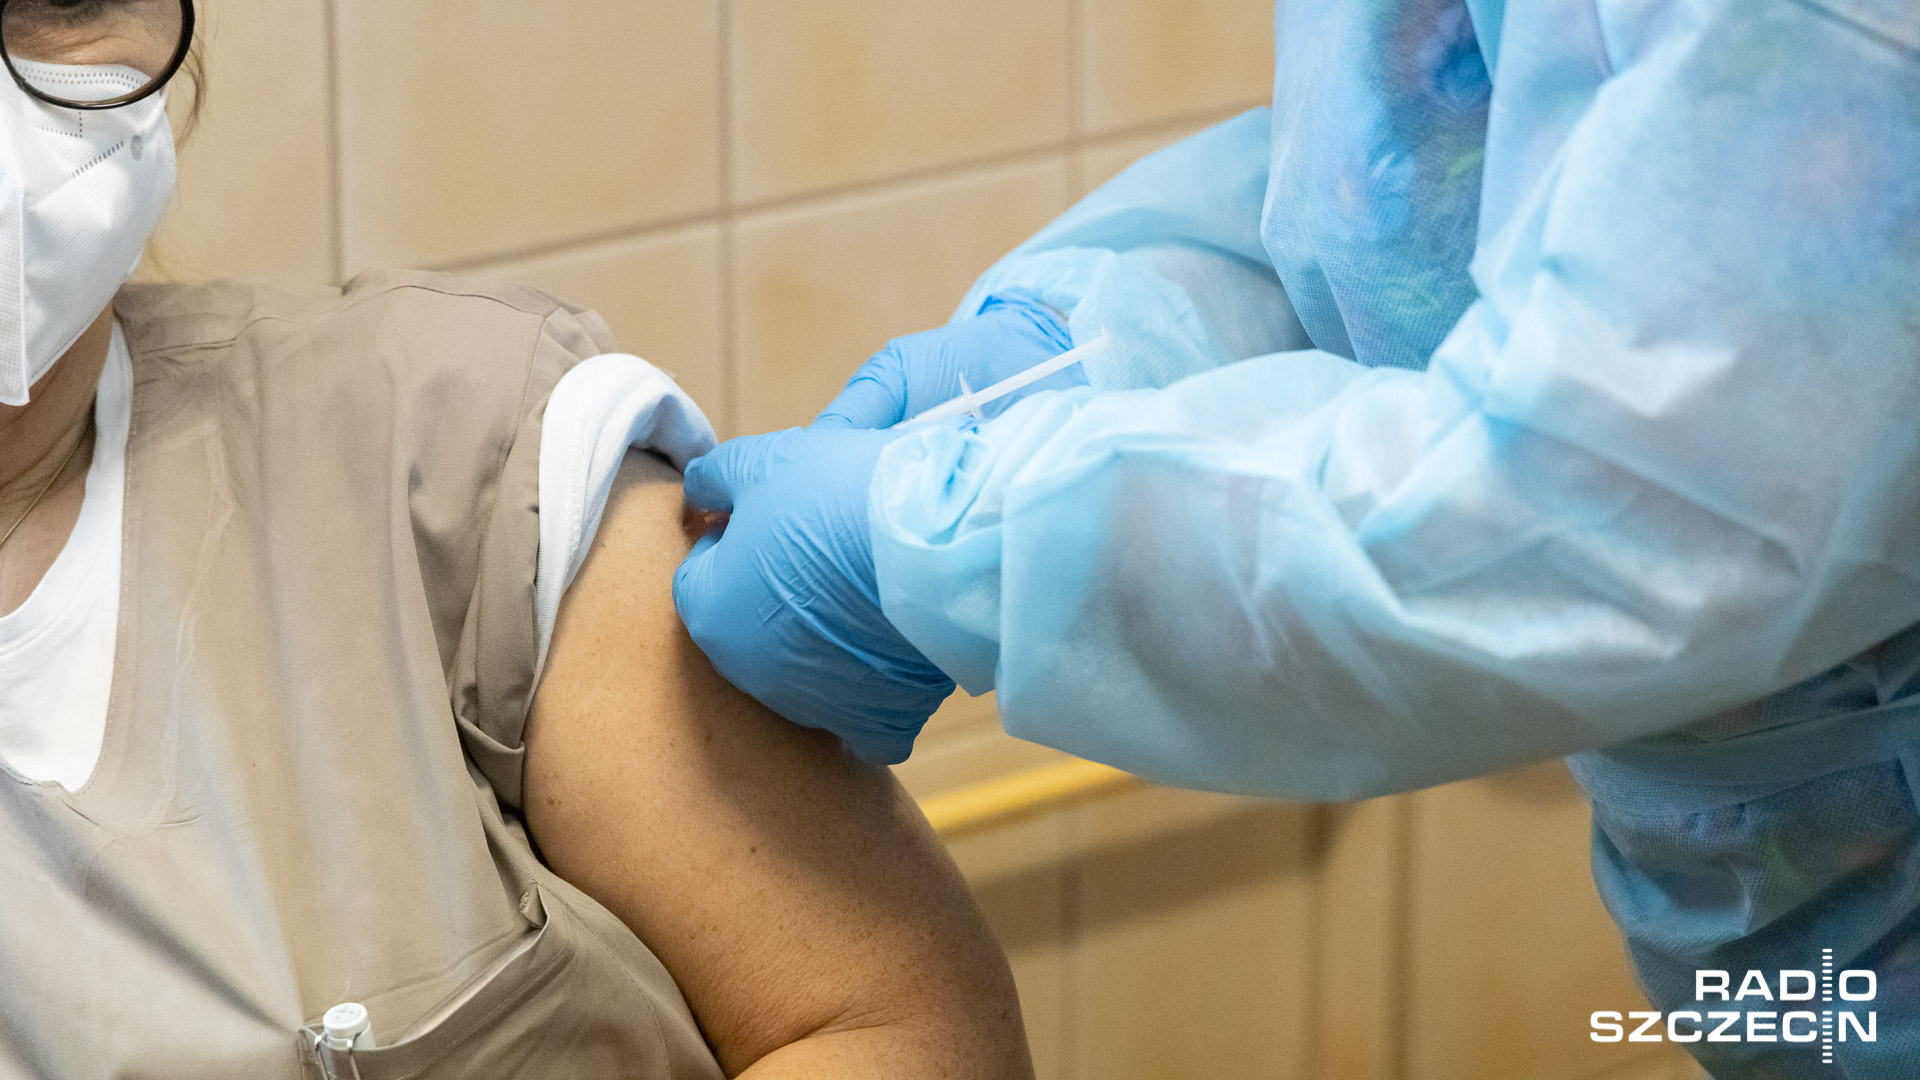 Bawaria wprowadzi obowiązek szczepienia medyków w domach opieki